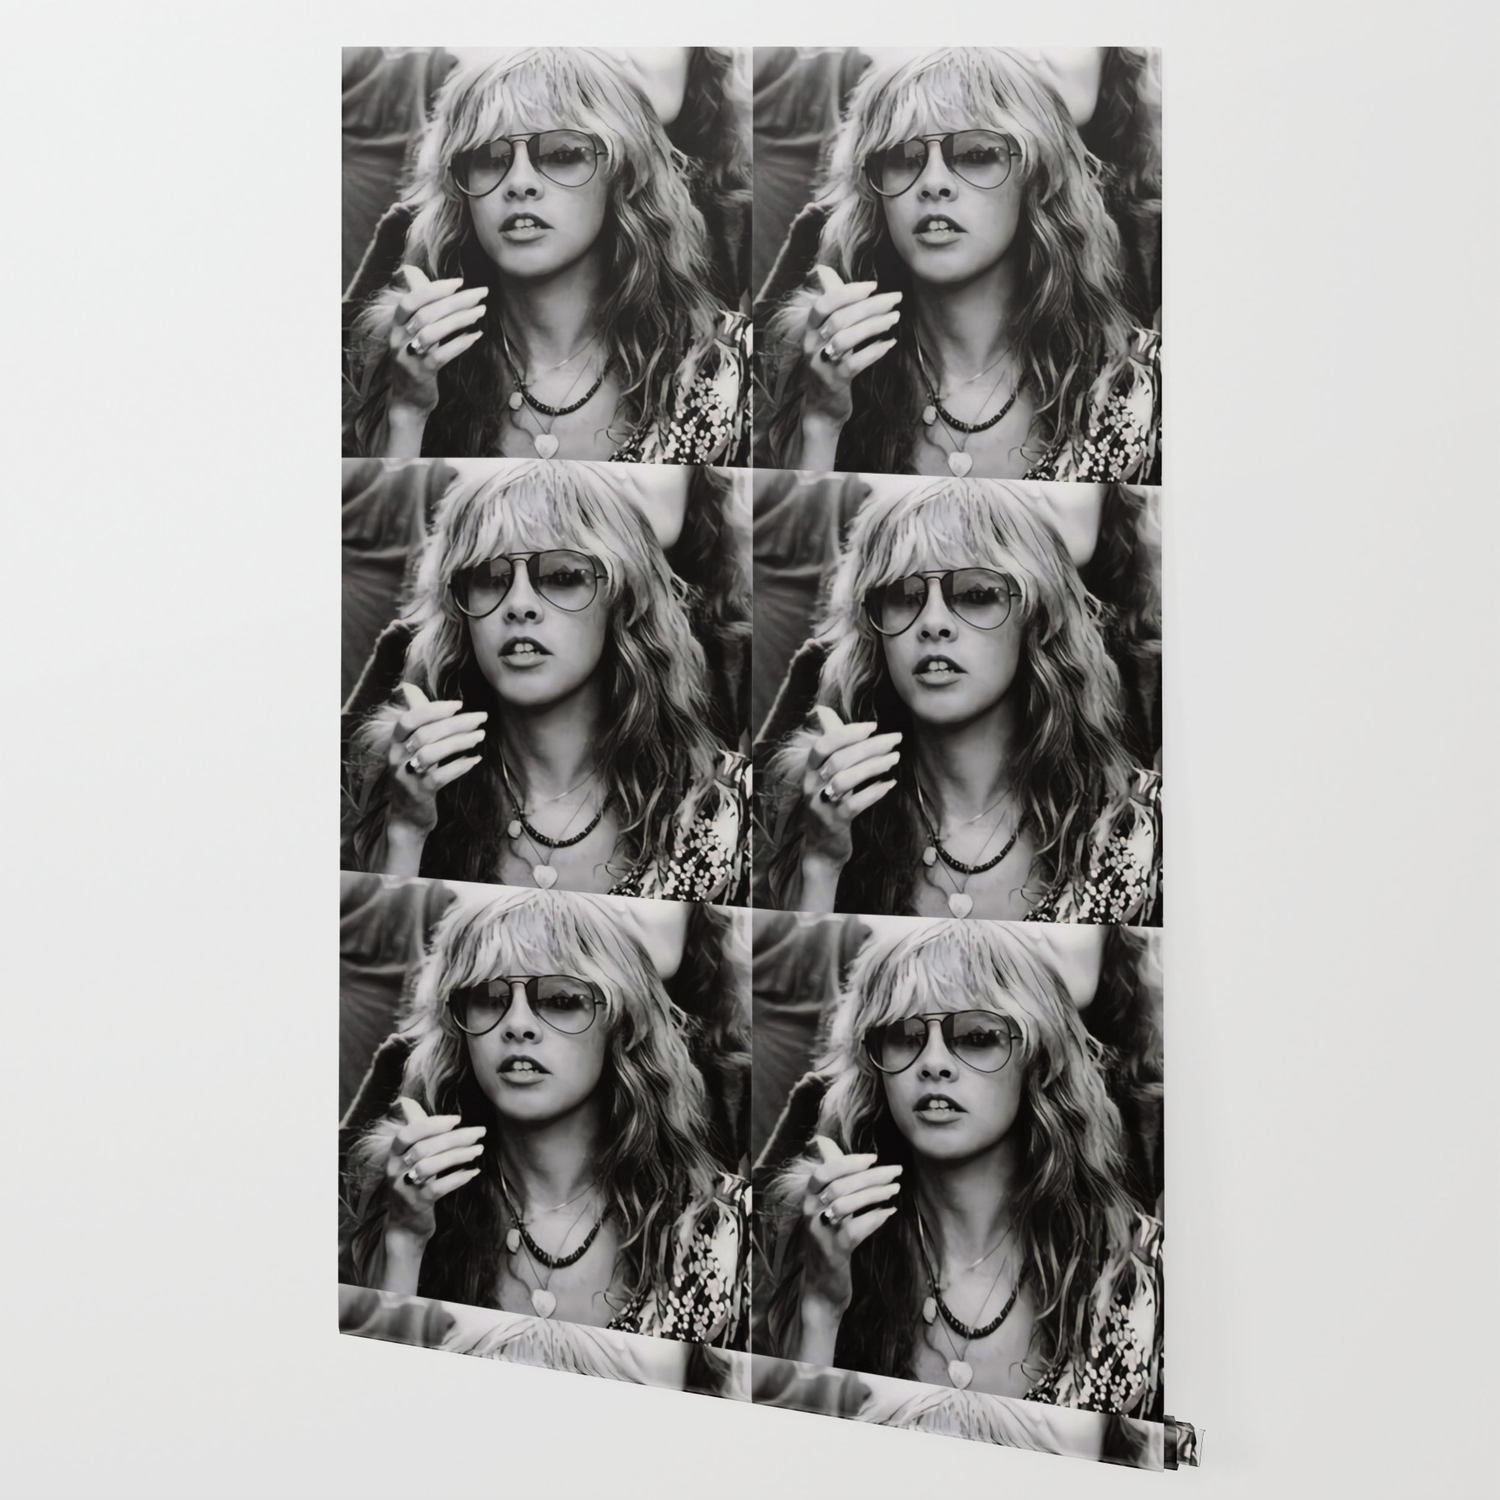 Stevie Nicks Wallpapers